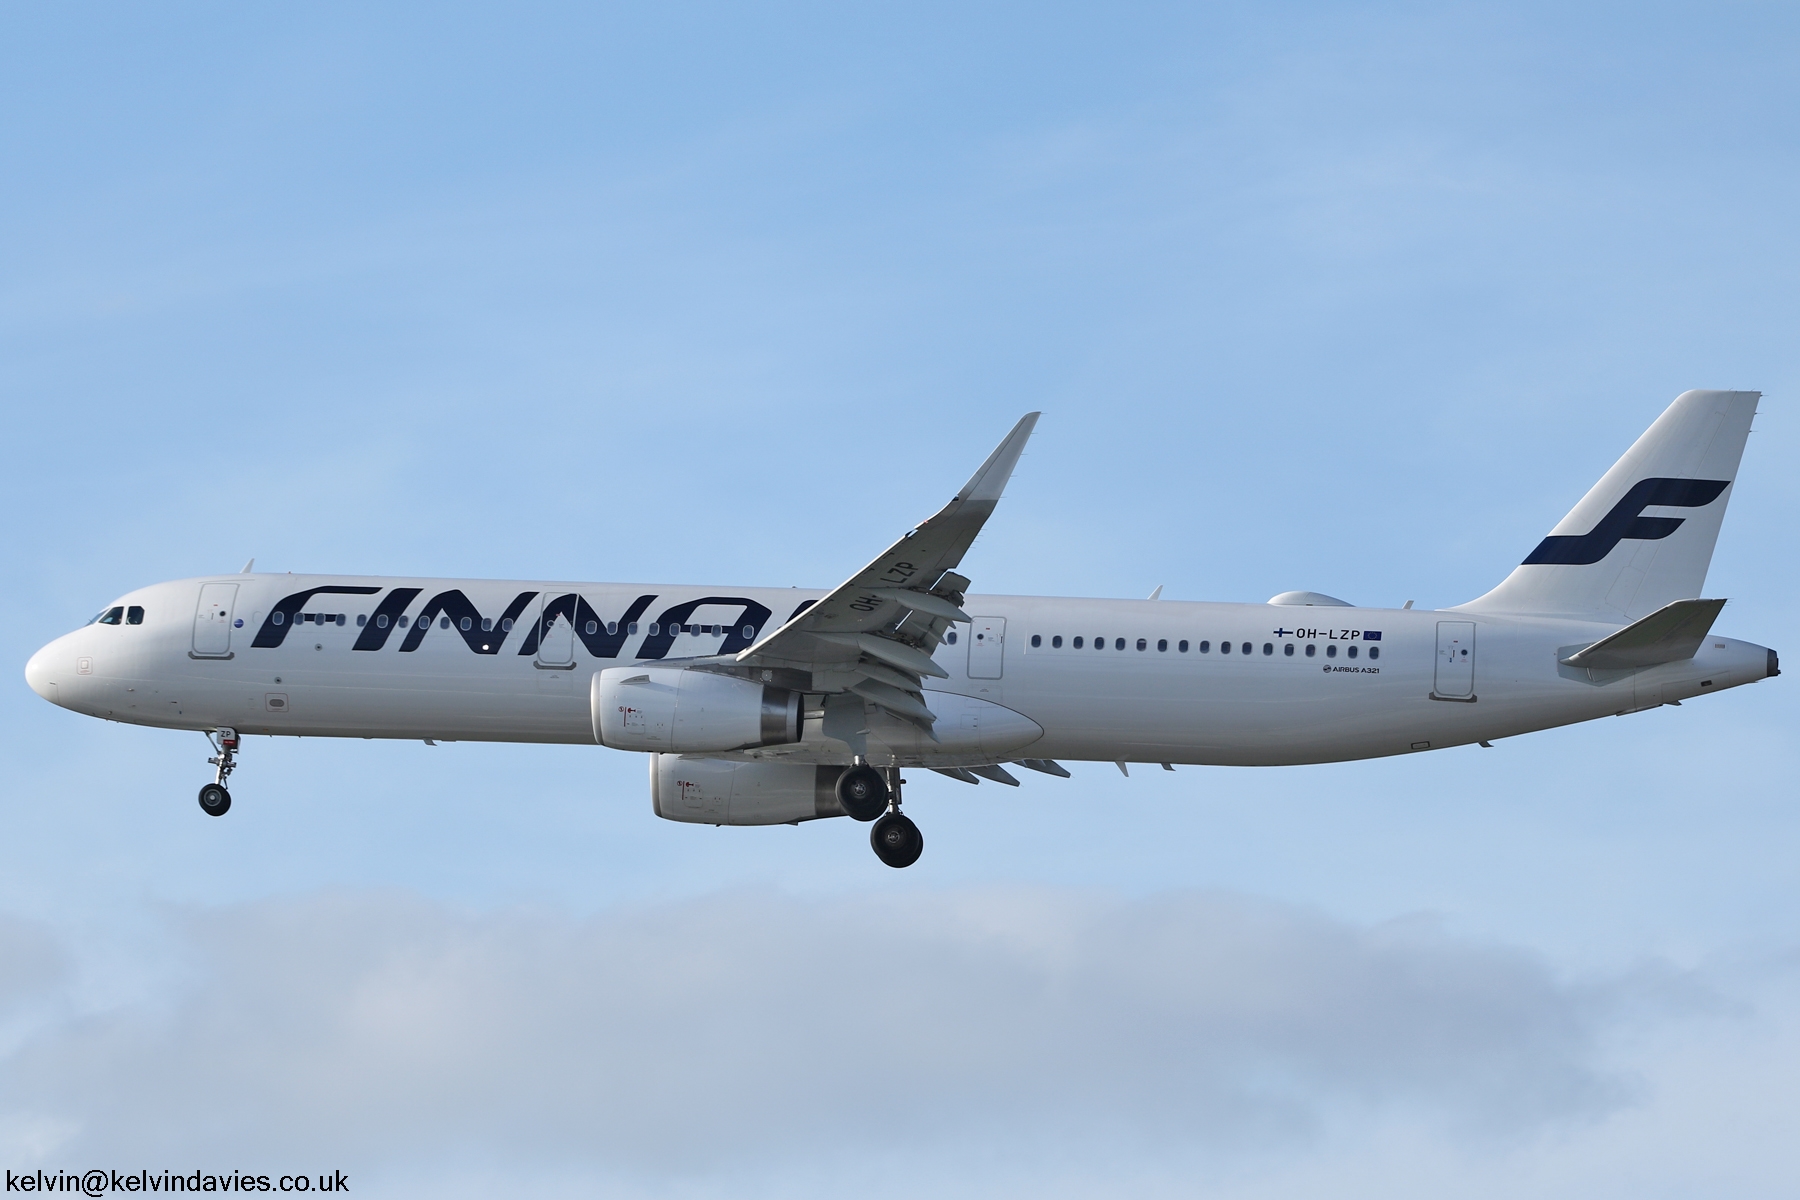 Finnair A321 OH-LZP